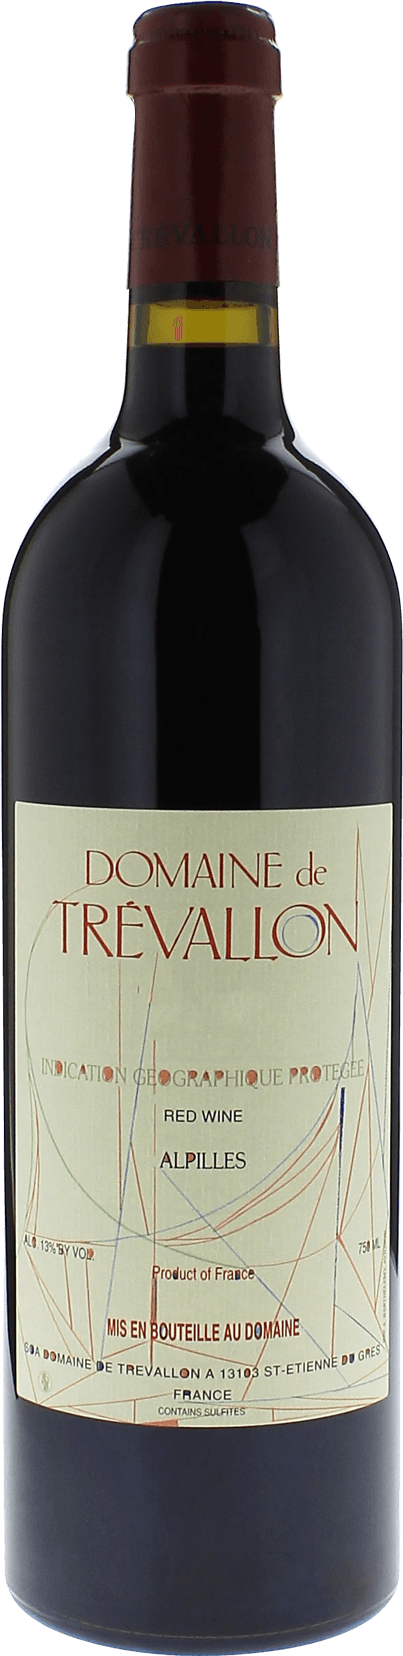 Domaine de trevallon rouge 2005  Vin de Pays, Provence